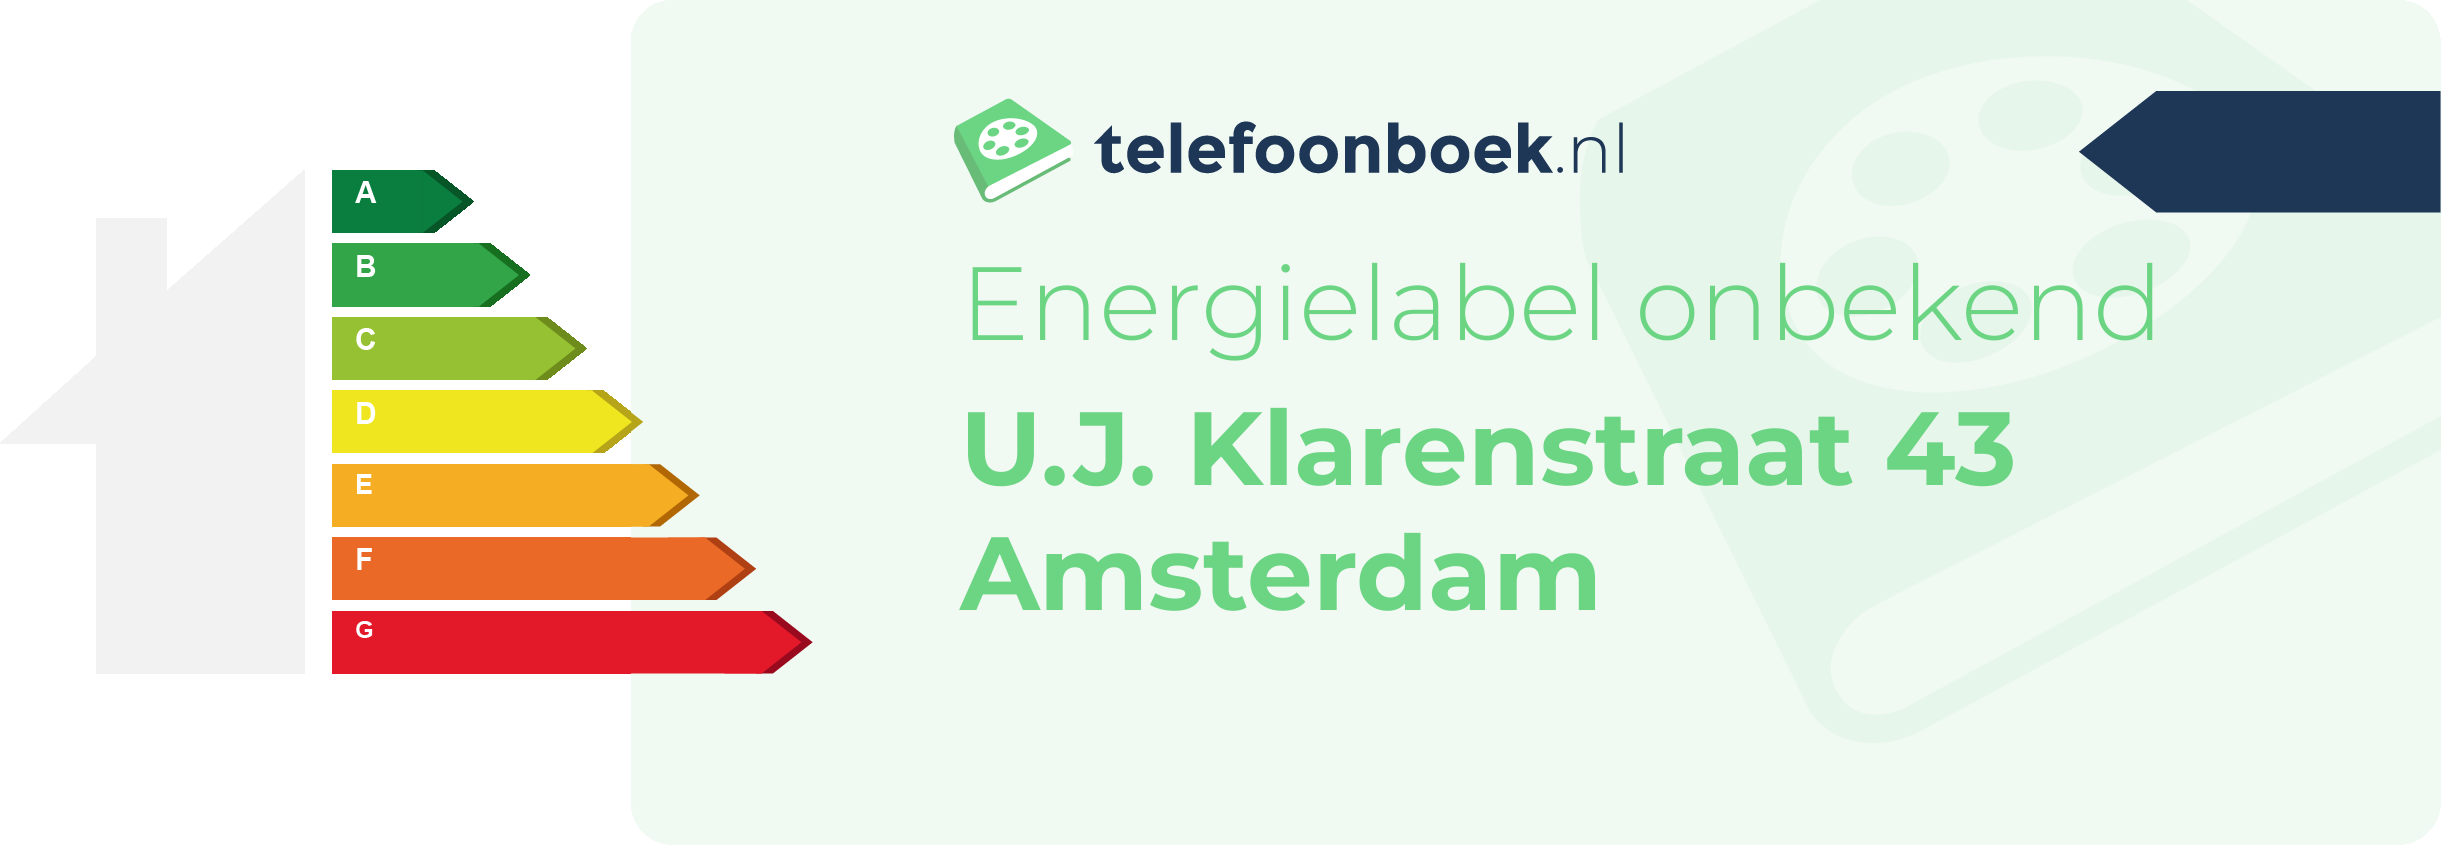 Energielabel U.J. Klarenstraat 43 Amsterdam